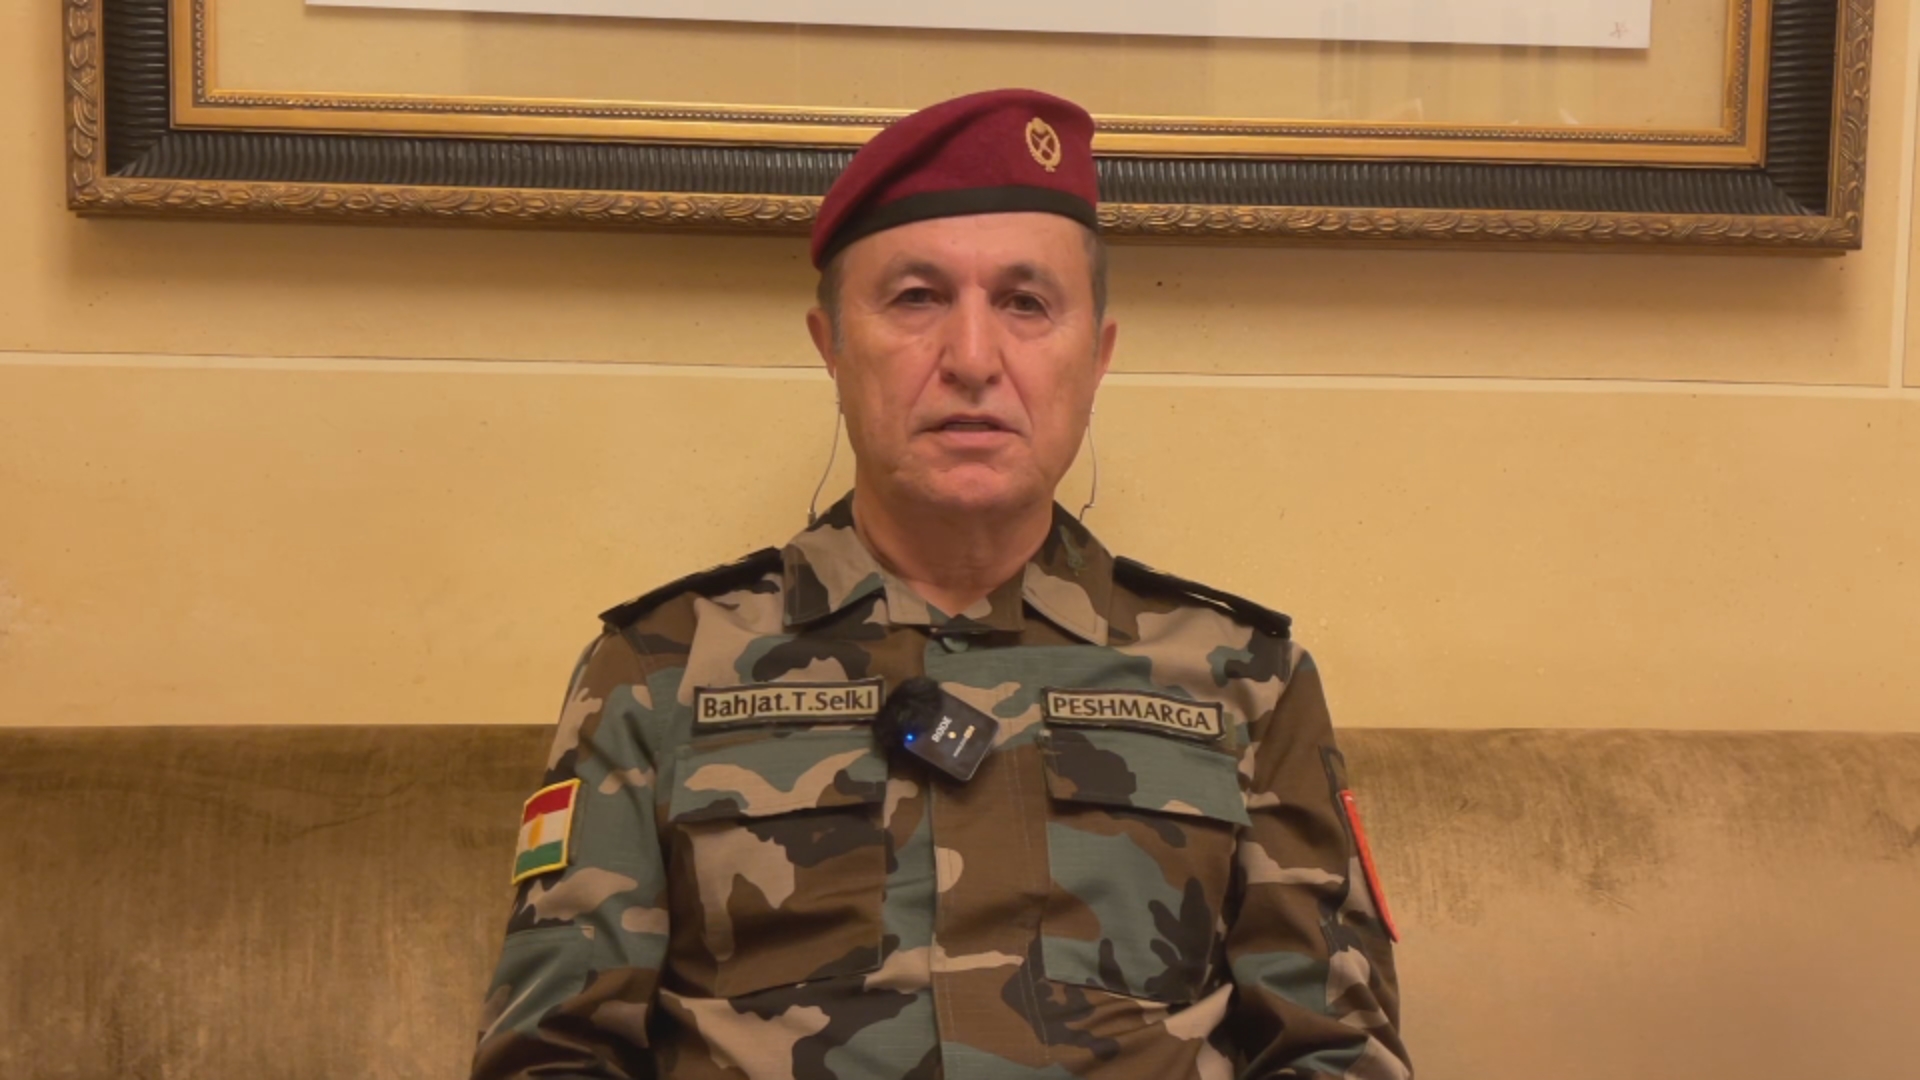 اللواء بهجت سيلكي: فرنسا لعبت دورا مهمة في هزيمة داعش